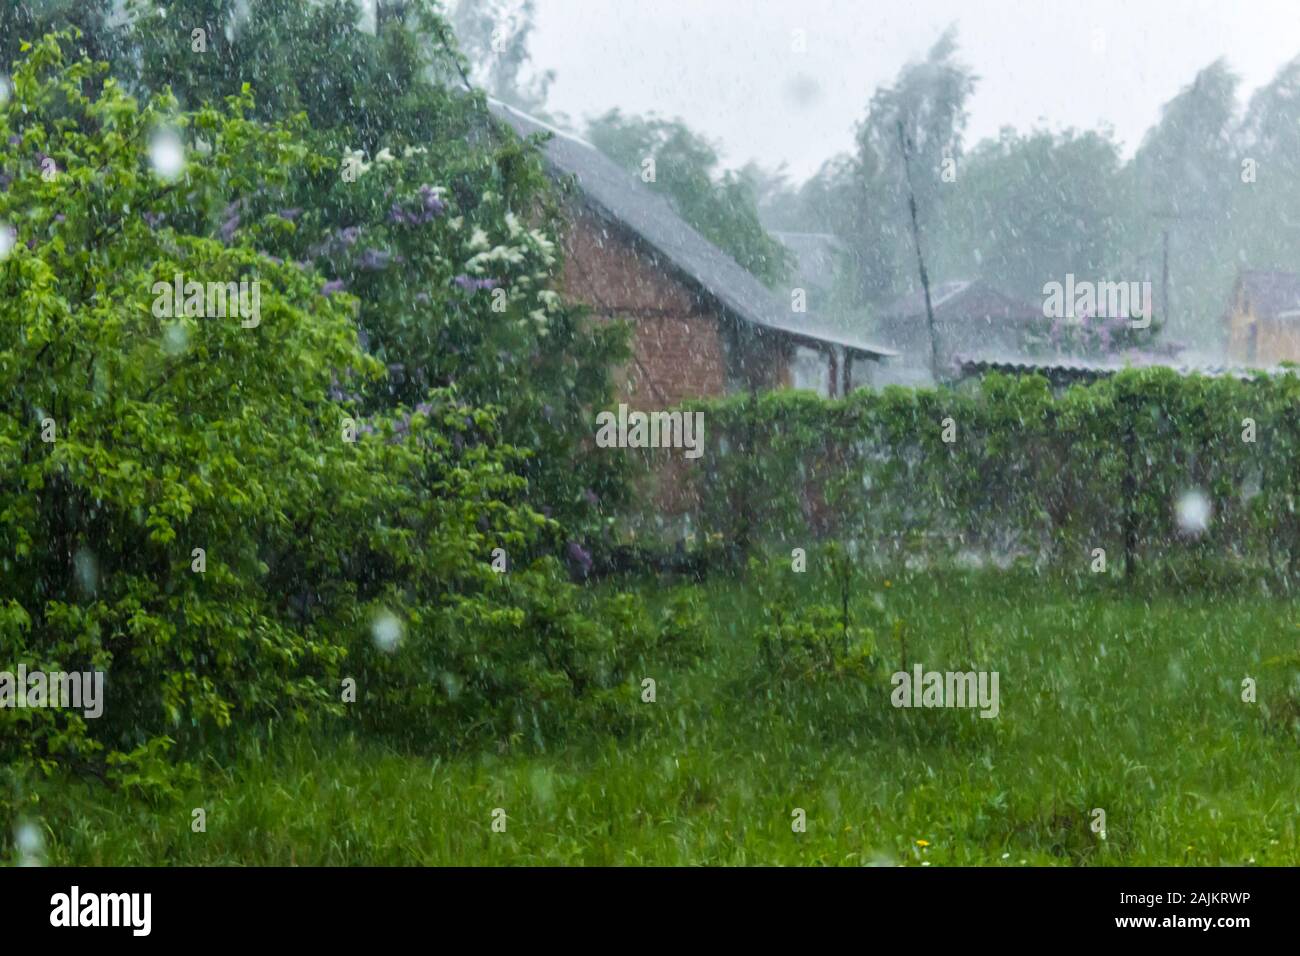 Frühling. Regen in den ländlichen Garten. Tropfen Regen fallen auf Häuser, frisches Laub und Blumen. Stockfoto